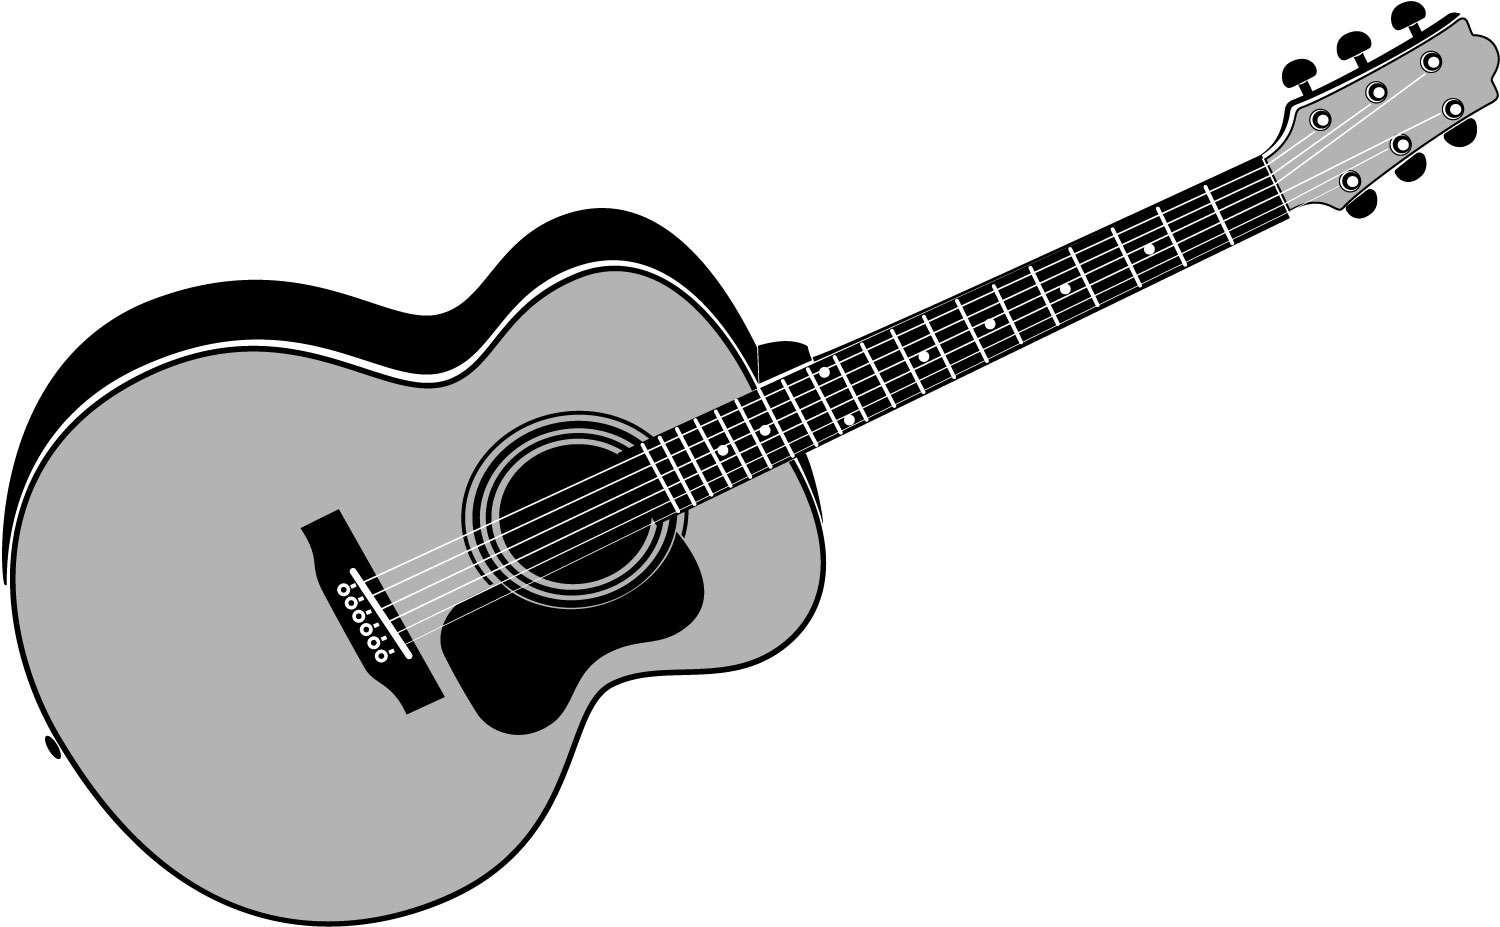 Acoustic guitar clipart